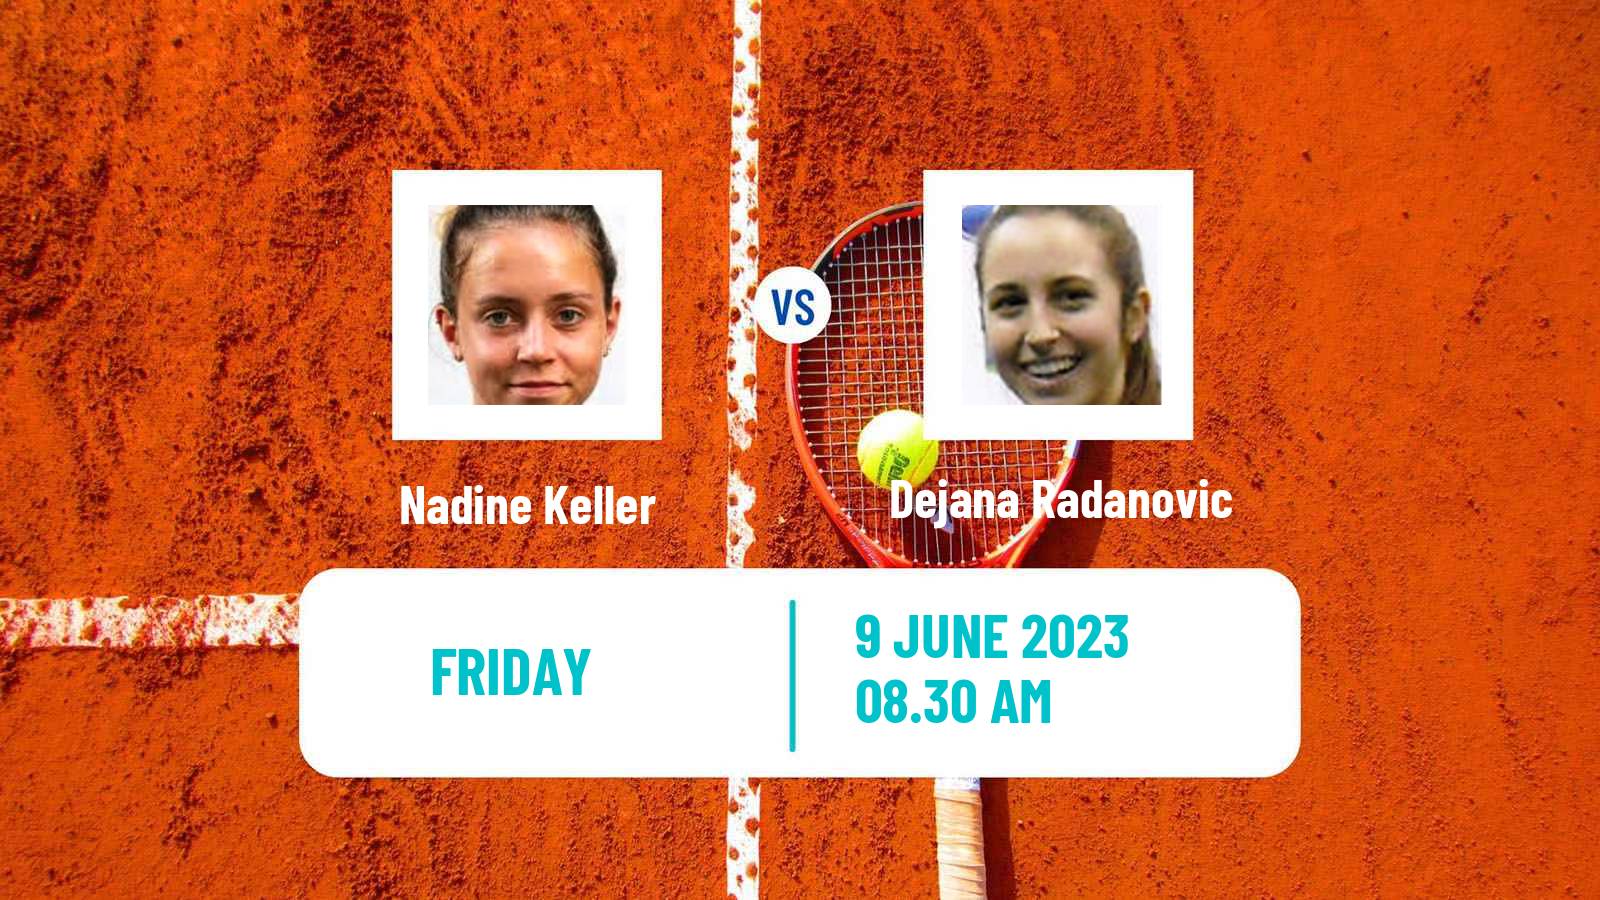 Tennis ITF W40 La Marsa Women Nadine Keller - Dejana Radanovic